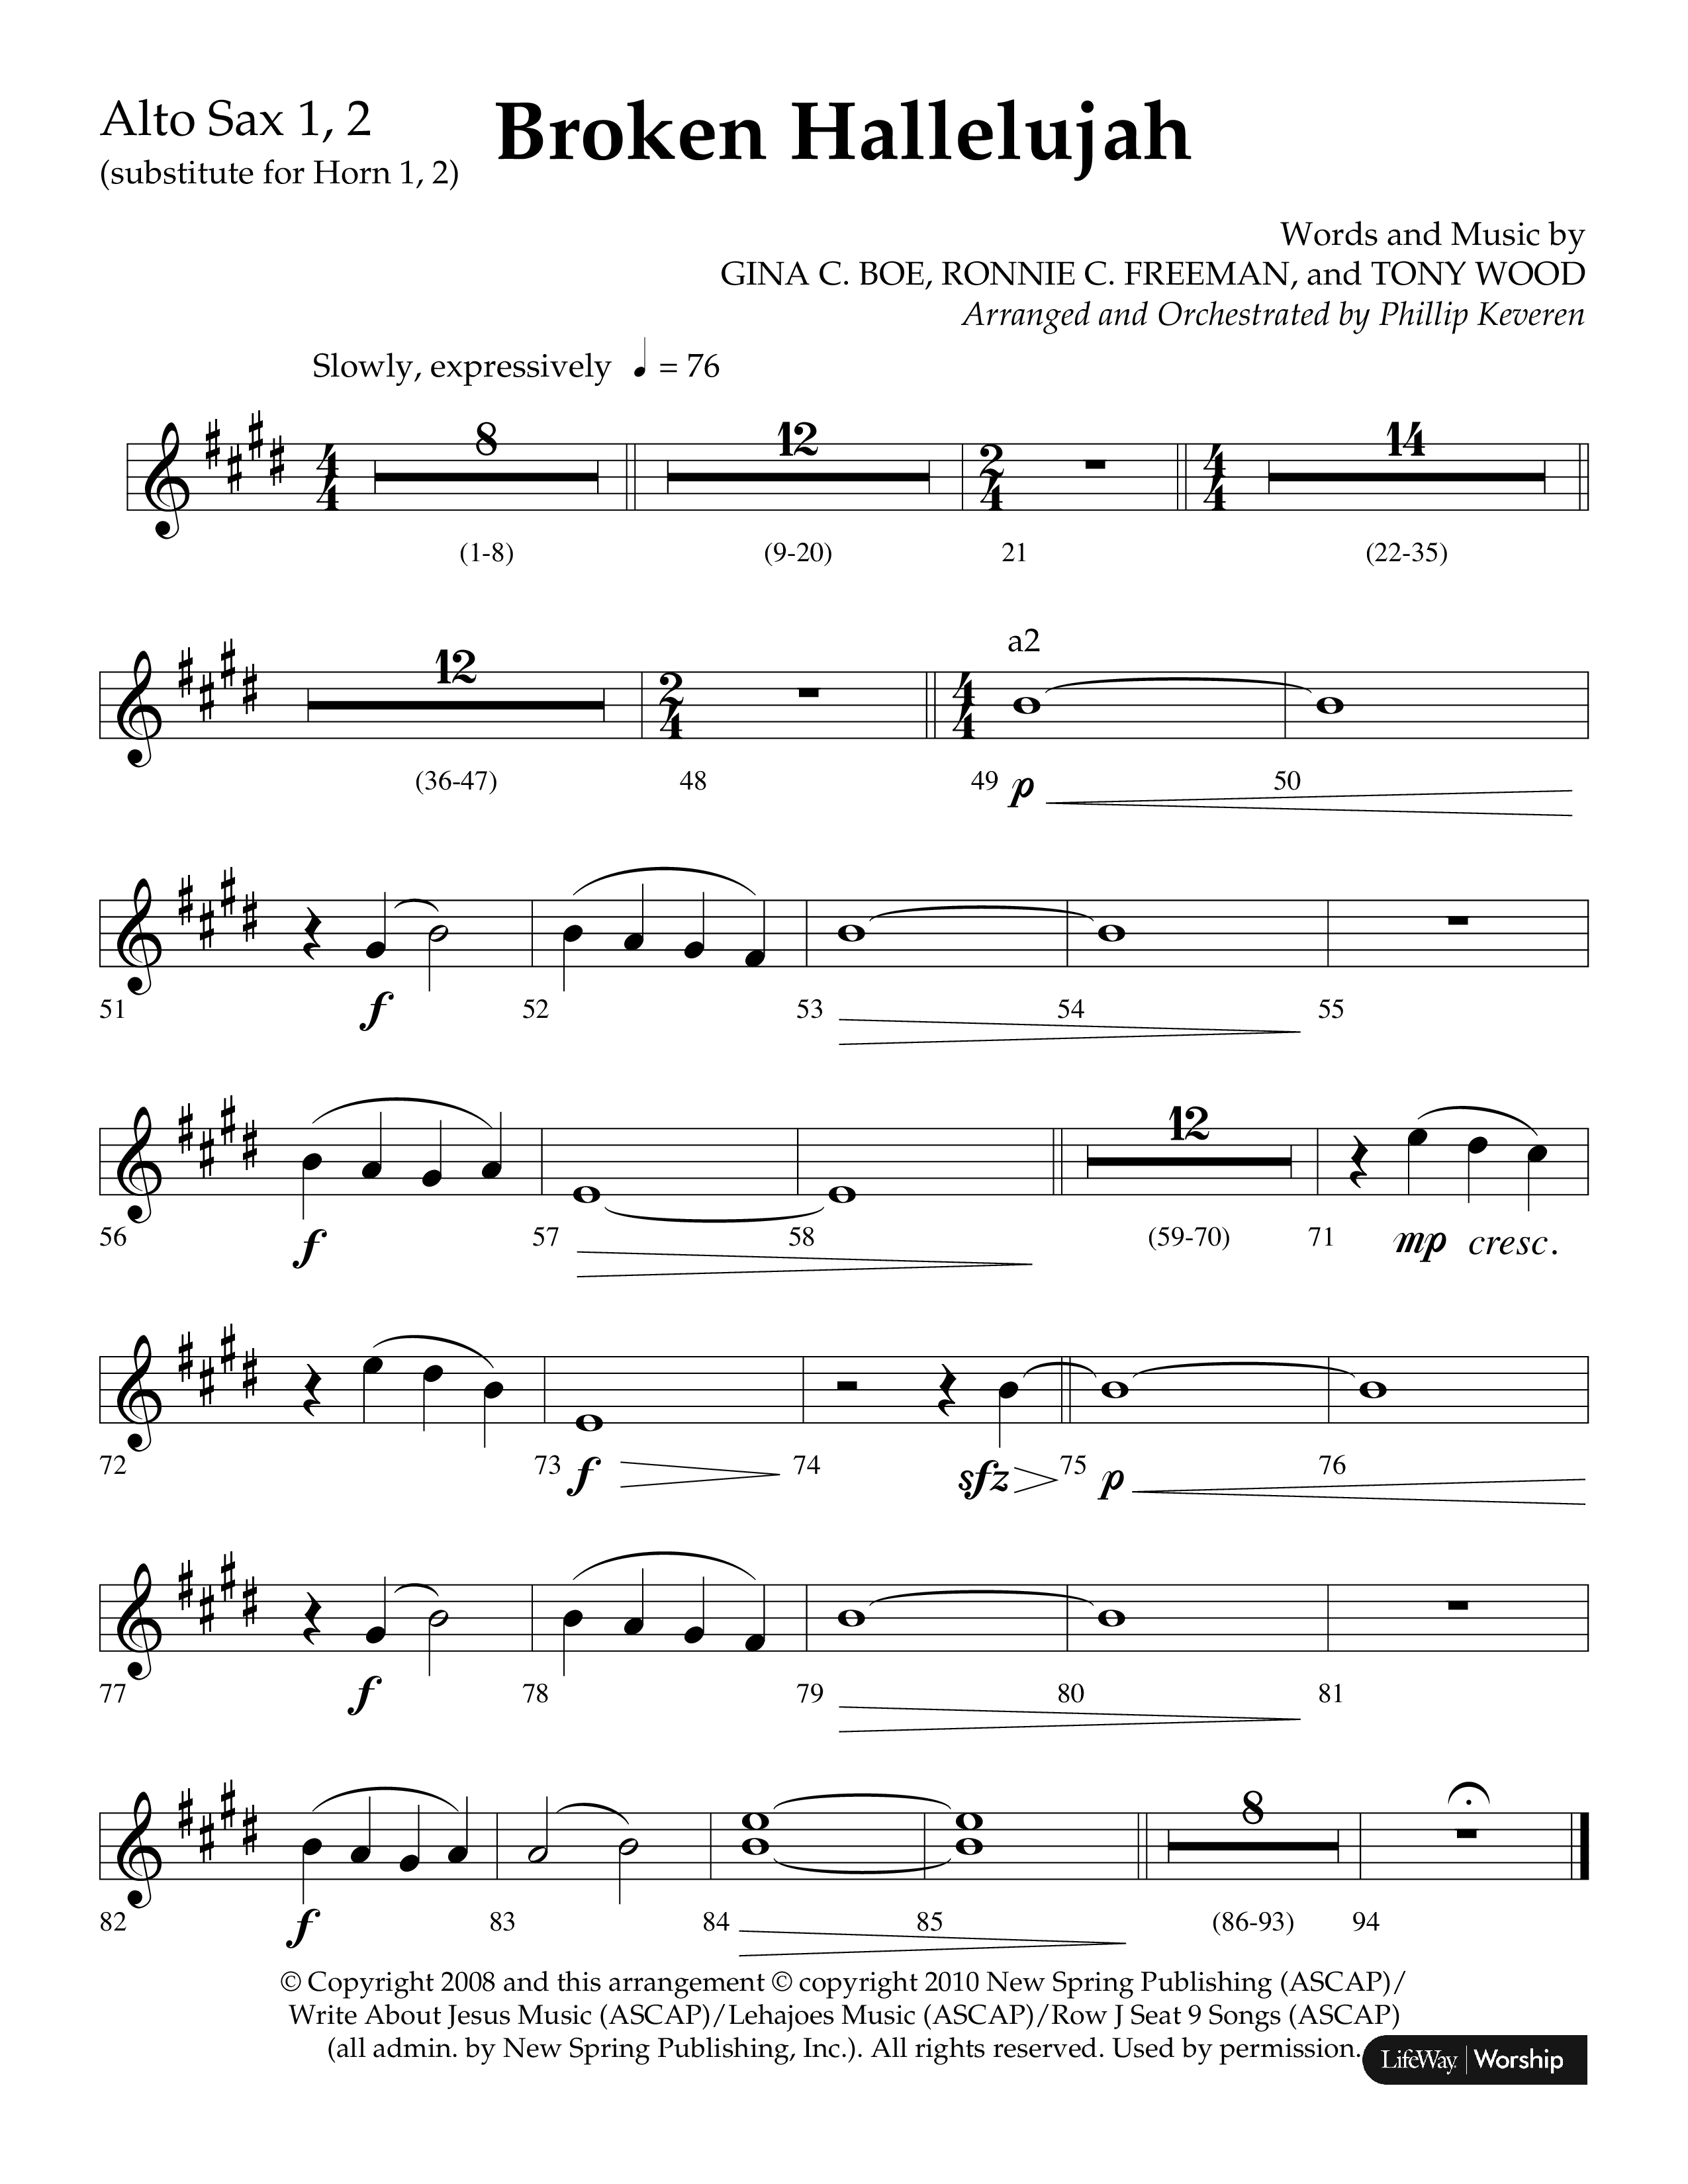 Broken Hallelujah (Choral Anthem SATB) Alto Sax 1/2 (Lifeway Choral / Arr. Phillip Keveren)